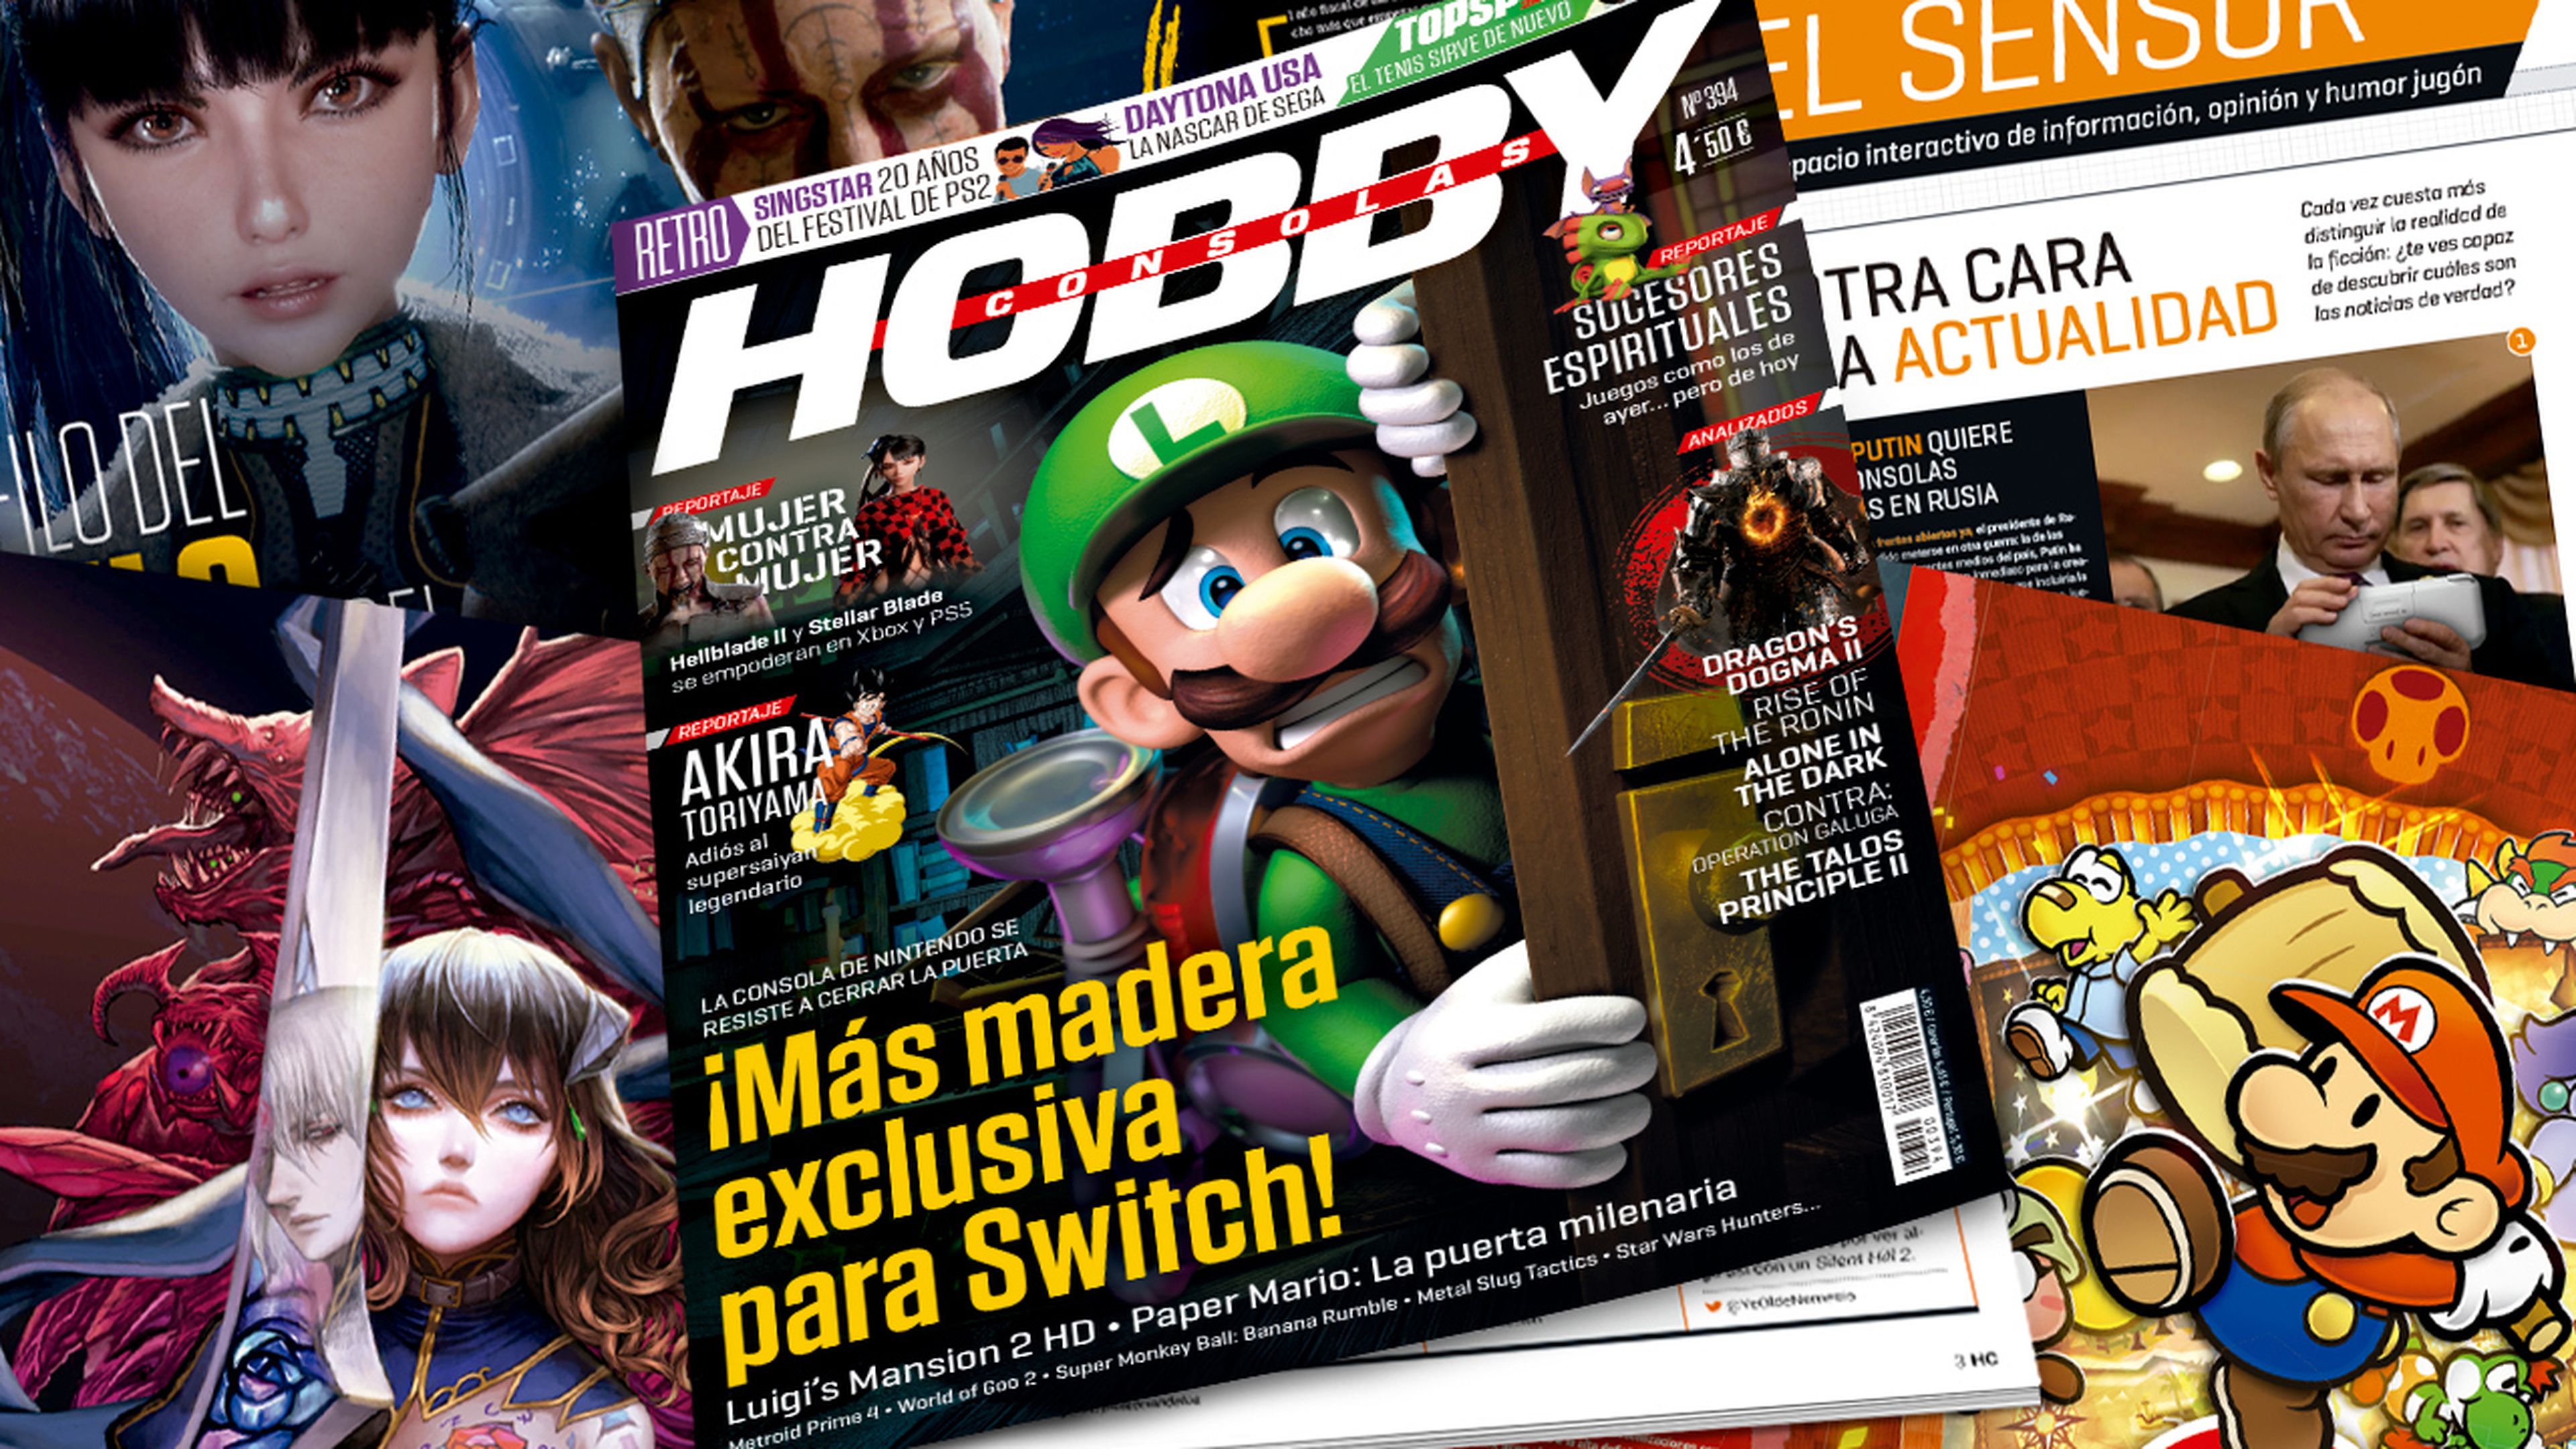 Hobby Consolas 394, ya a la venta, con Luigi’s Mansion 2 HD en portada